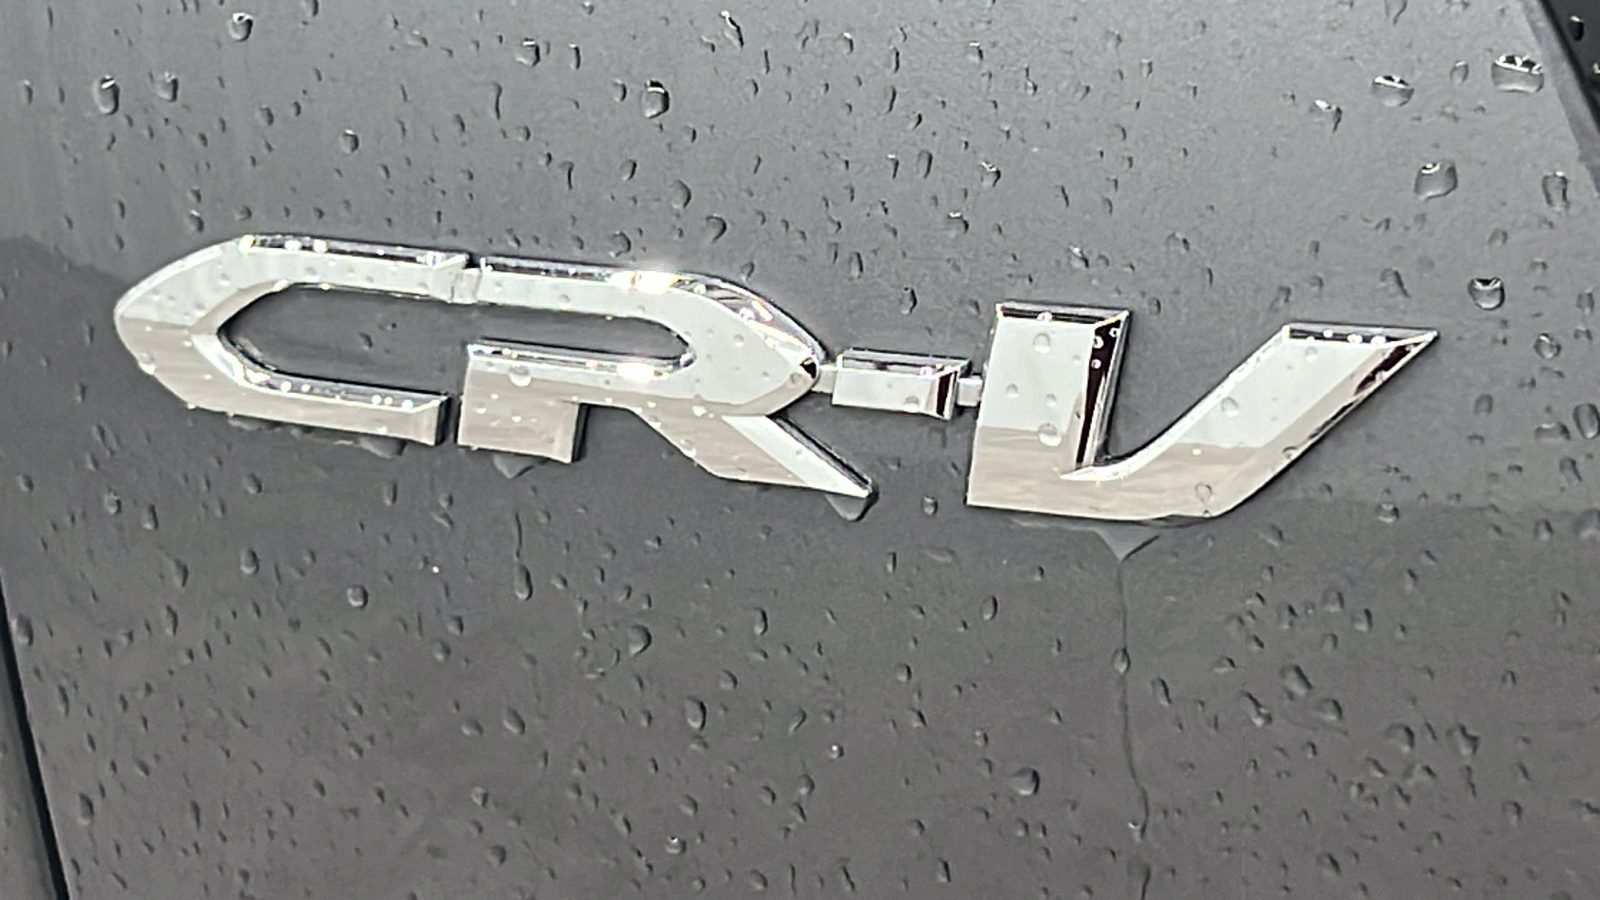 2014 Honda CR-V EX-L 6